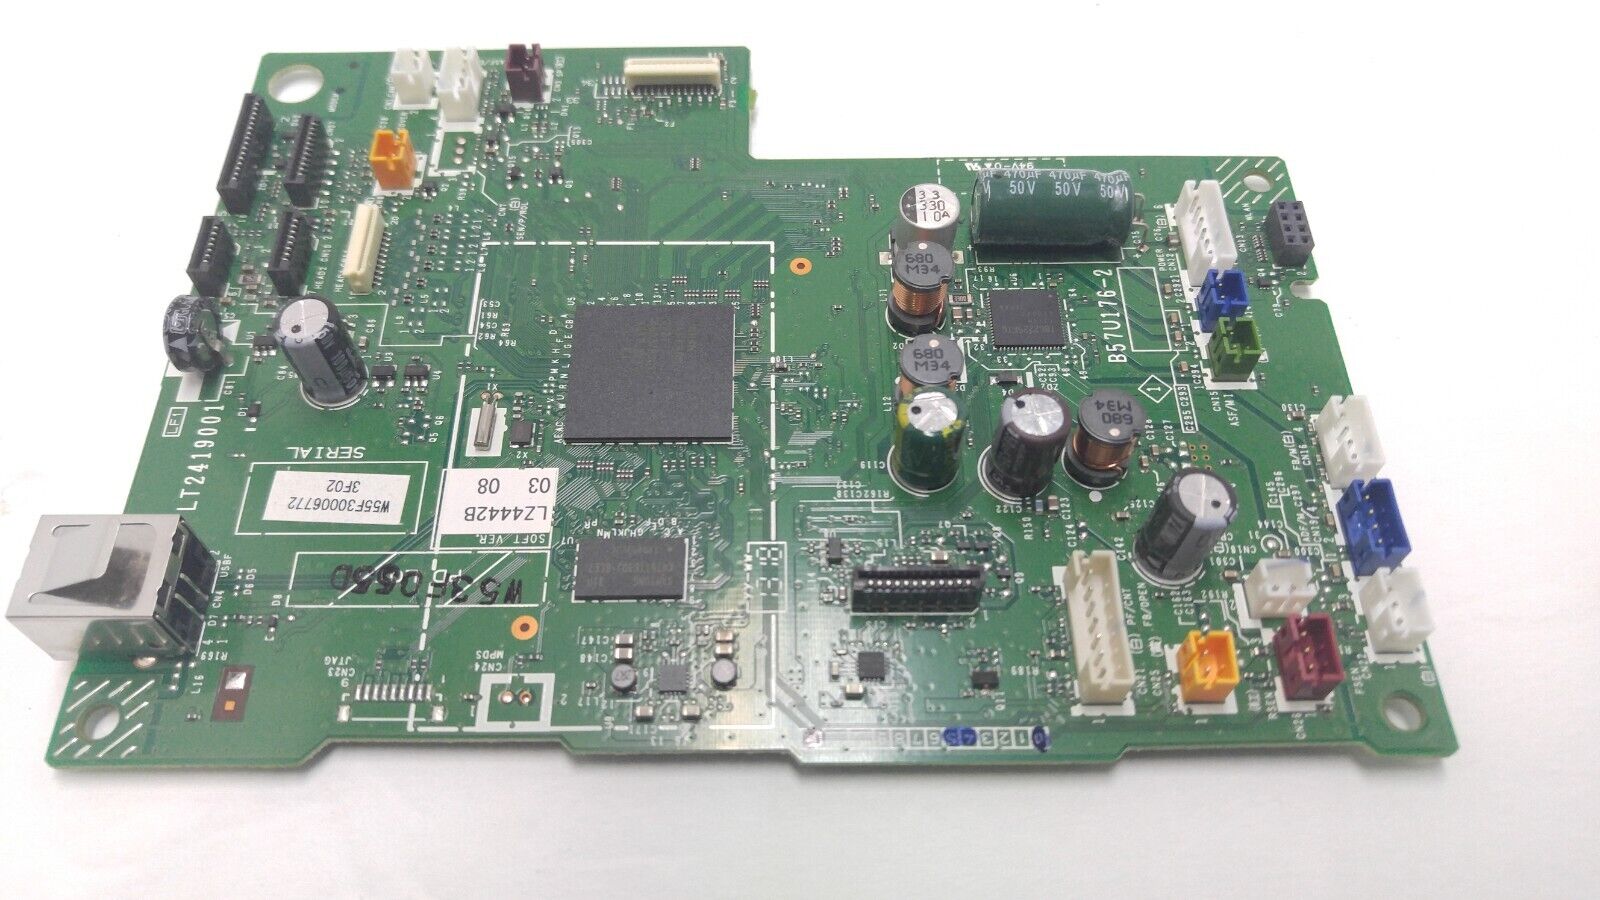 Brother MFC-J475DW main logic board - LT2419001 b57u176-2 - Click Image to Close